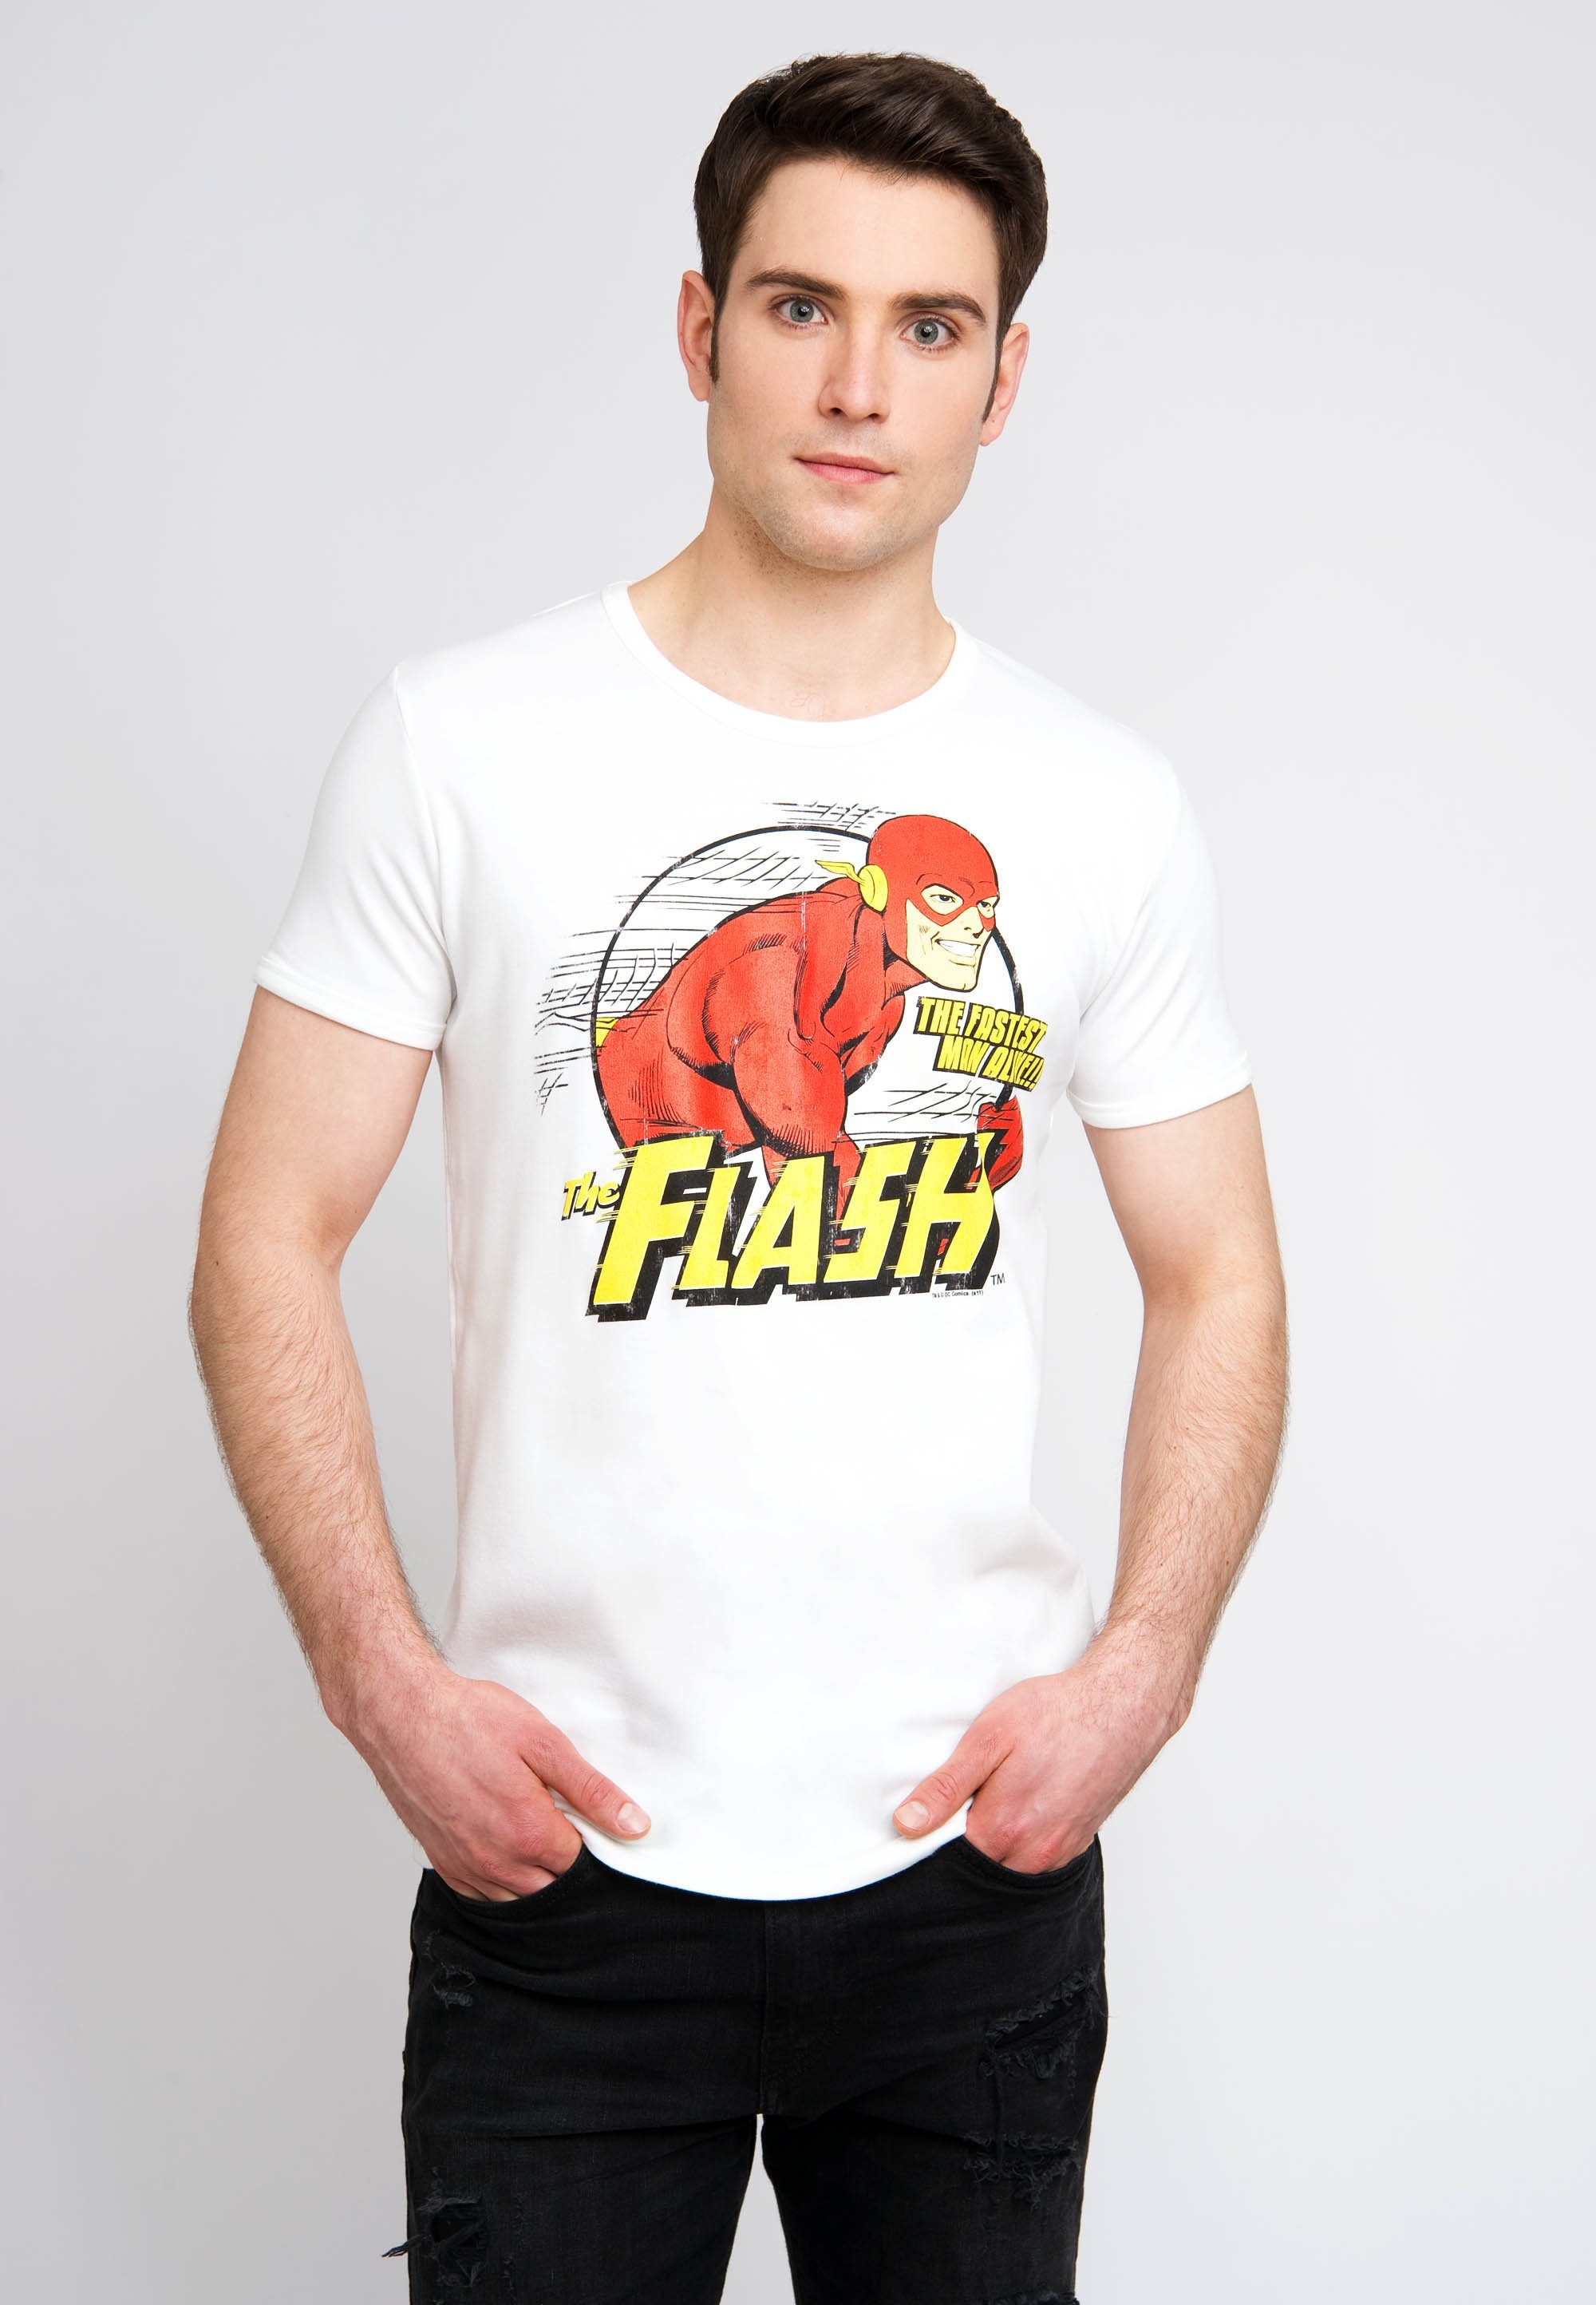 Flash mit LOGOSHIRT tollem Logoshirt The Herren T-Shirt Man The Alive von Fastest The für T-Shirt Flash-Print, Tolles